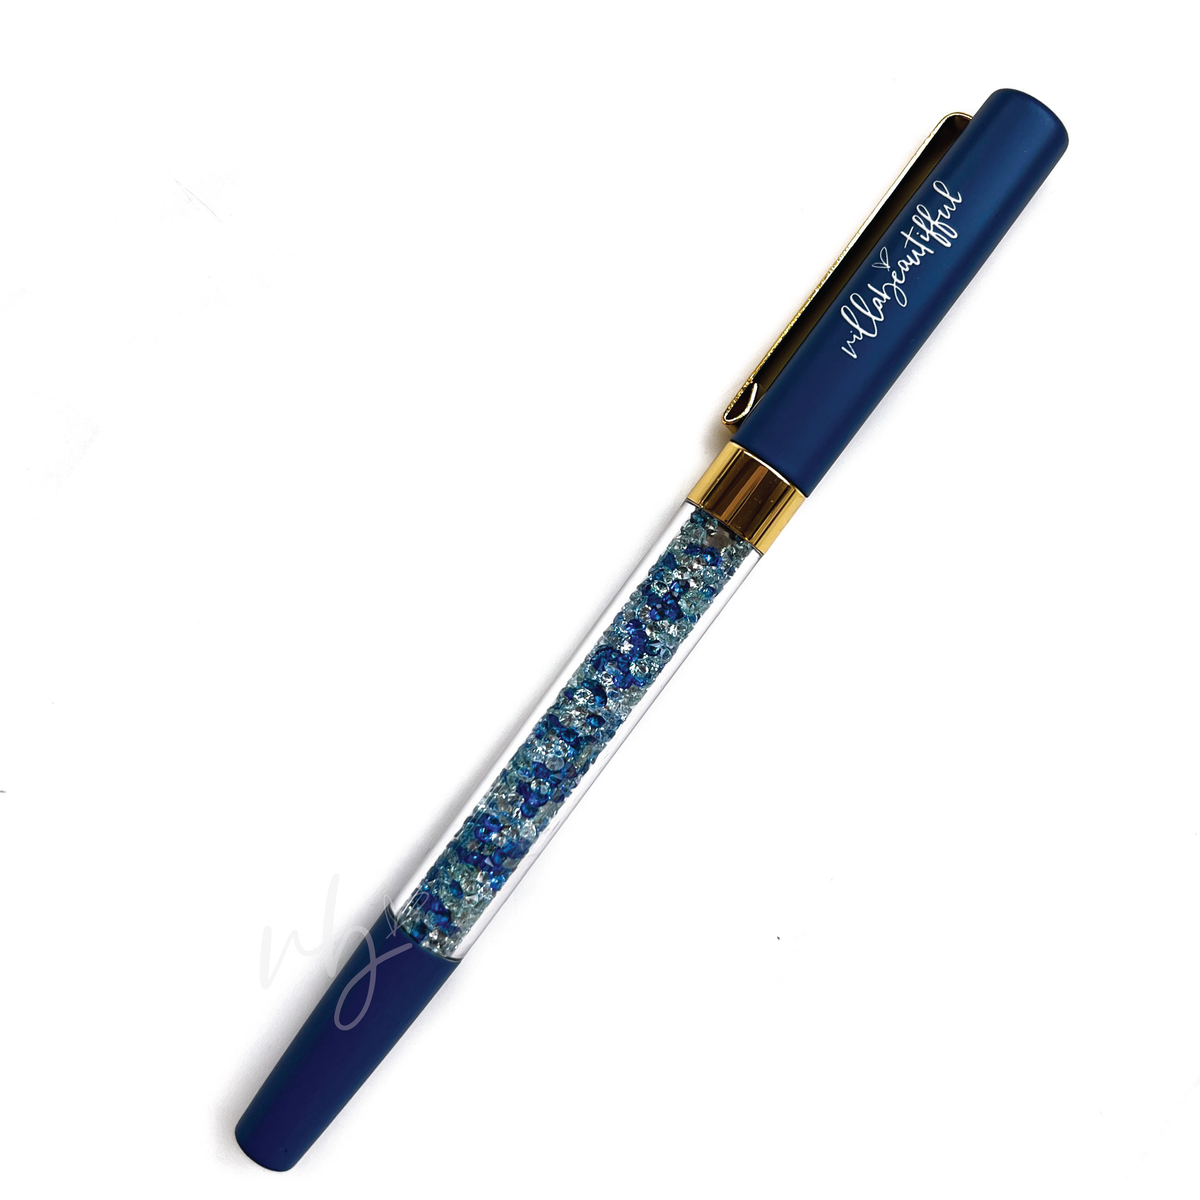 Duke Imperfect Crystal VBPen | limited kit pen